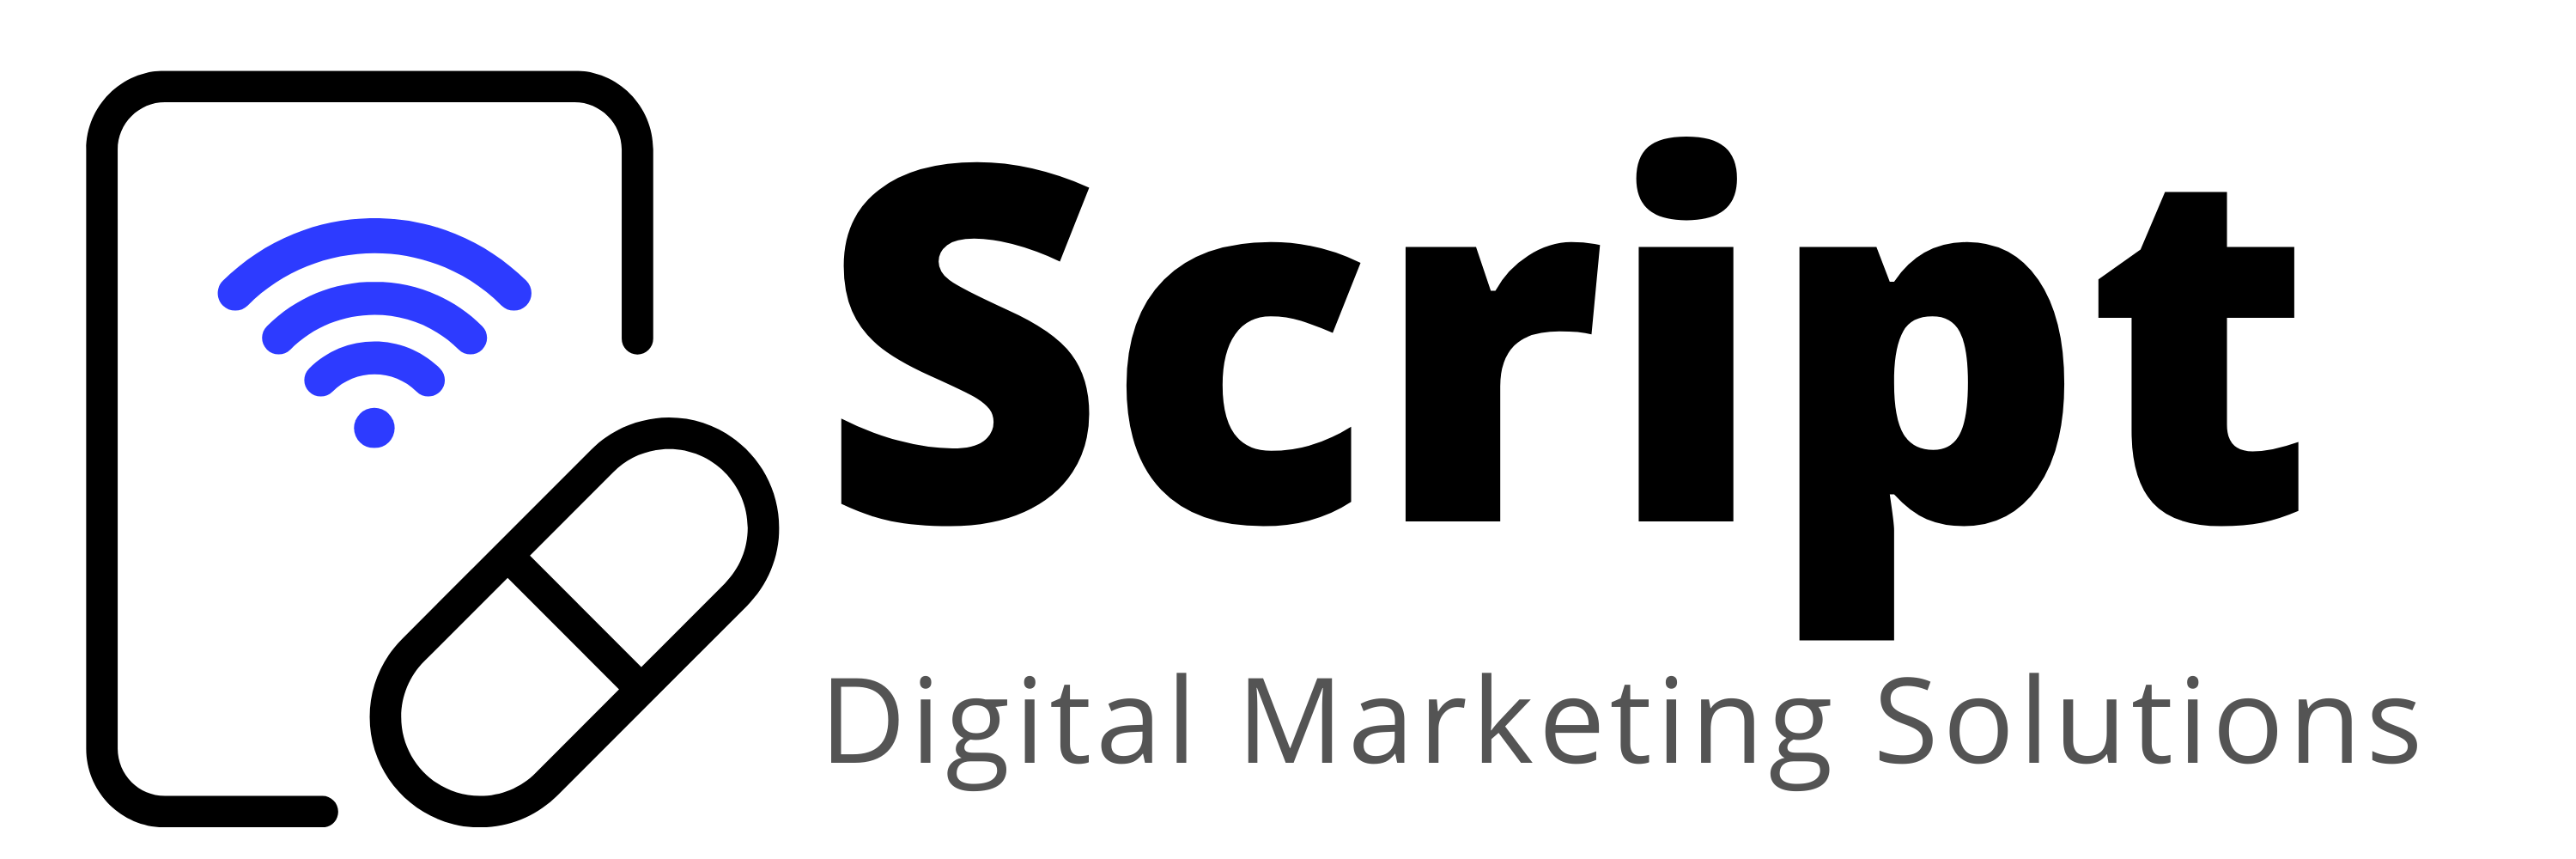 Script Digital Marketing Solutions